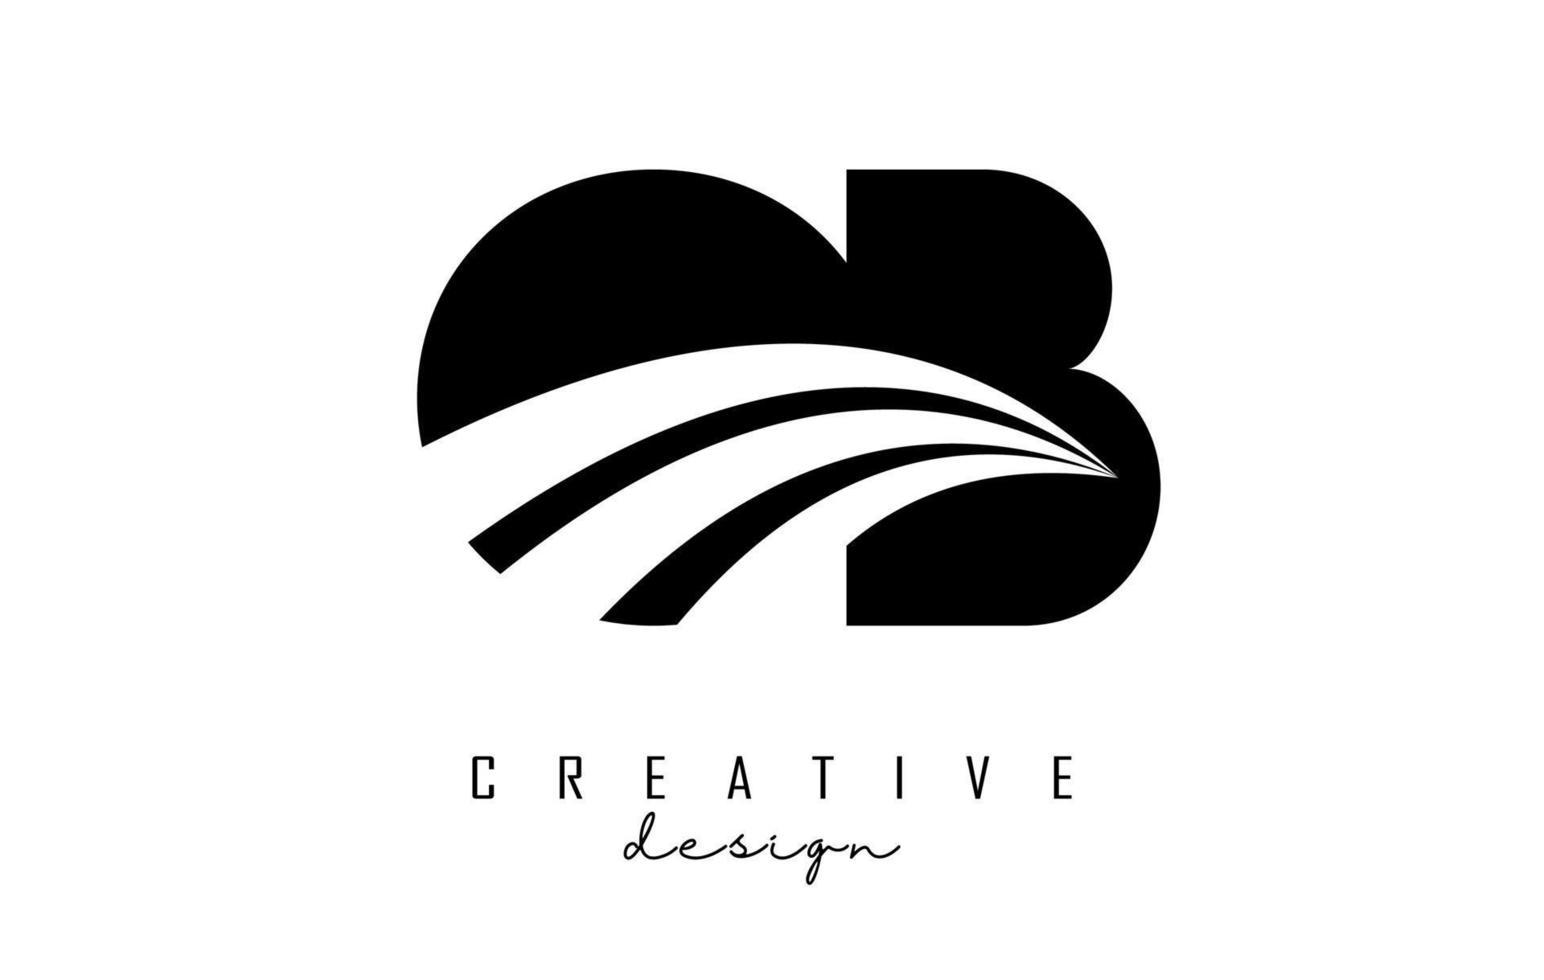 creatief zwarte letters ob ob-logo met leidende lijnen en wegconceptontwerp. letters met geometrisch ontwerp. vector